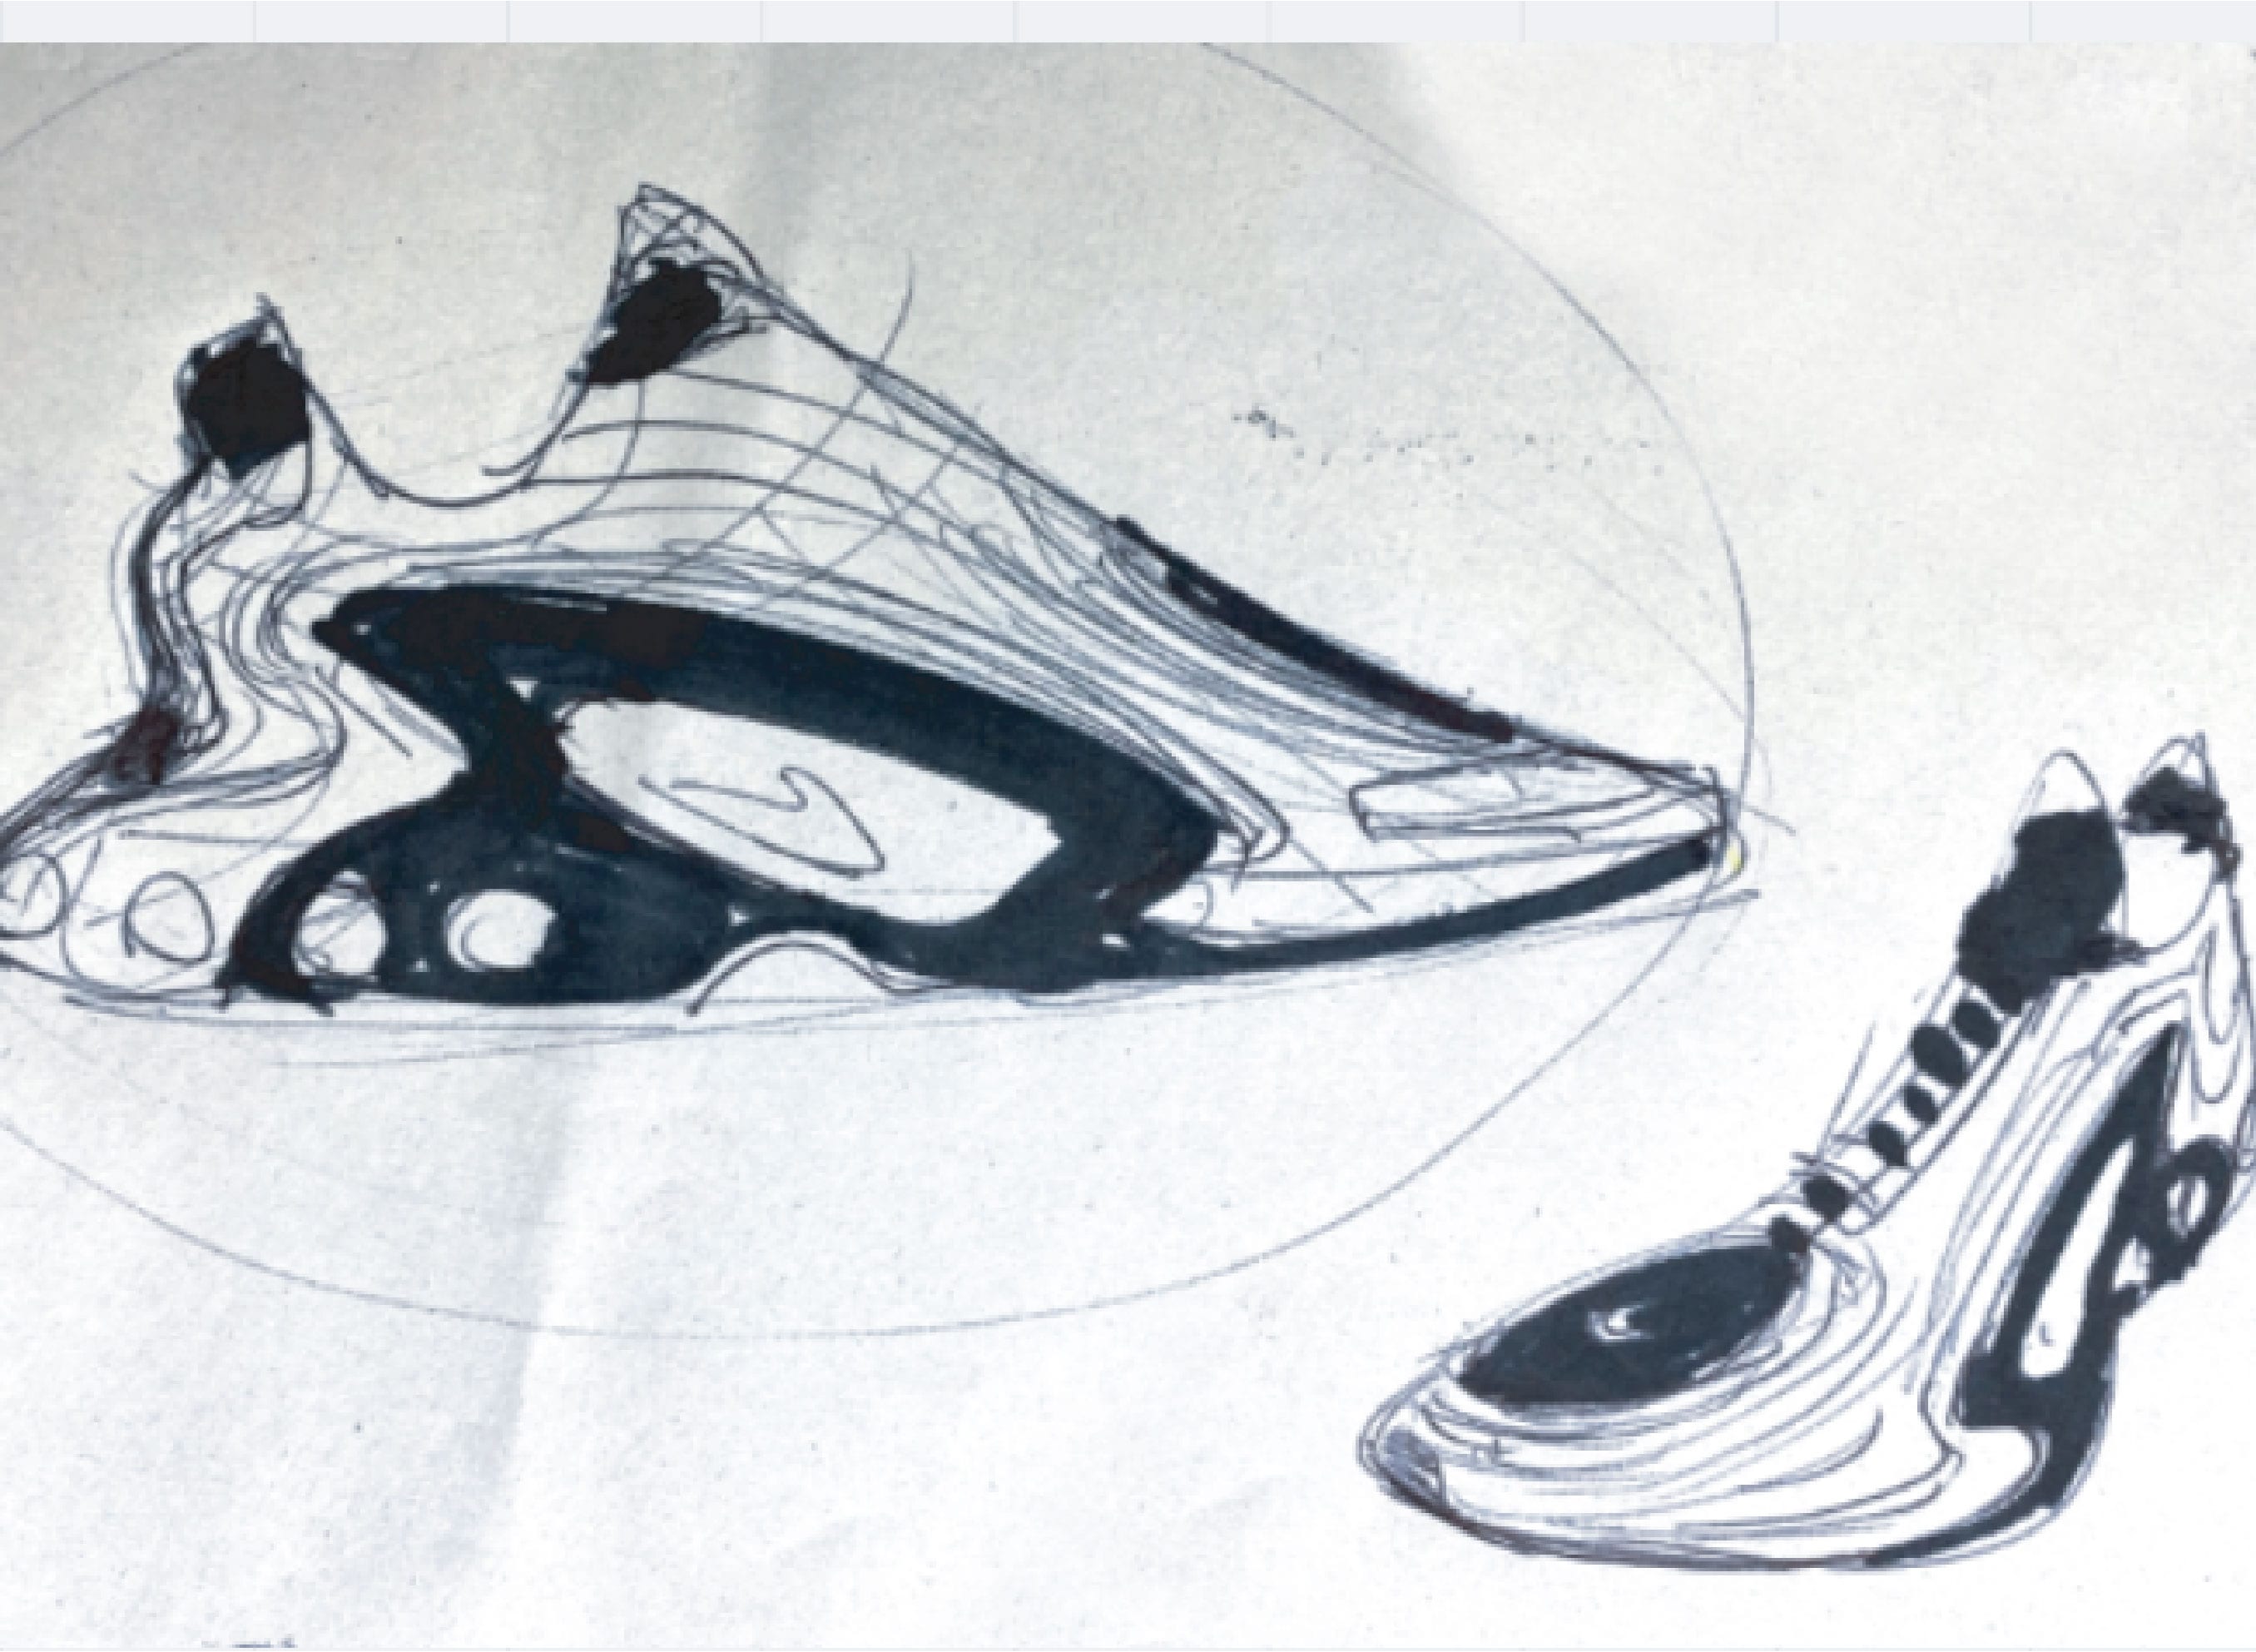 Afbeelding van twee beginschetsen van een sneaker. Links is een abstracte, golvende schets van een schoen te zien, rechts een gedetailleerdere schets die een futuristische sneaker met een opvallende zool en designdetails vanaf de zijkant toont. Beide schetsen zijn gemaakt met zwarte inkt op een lichte achtergrond.